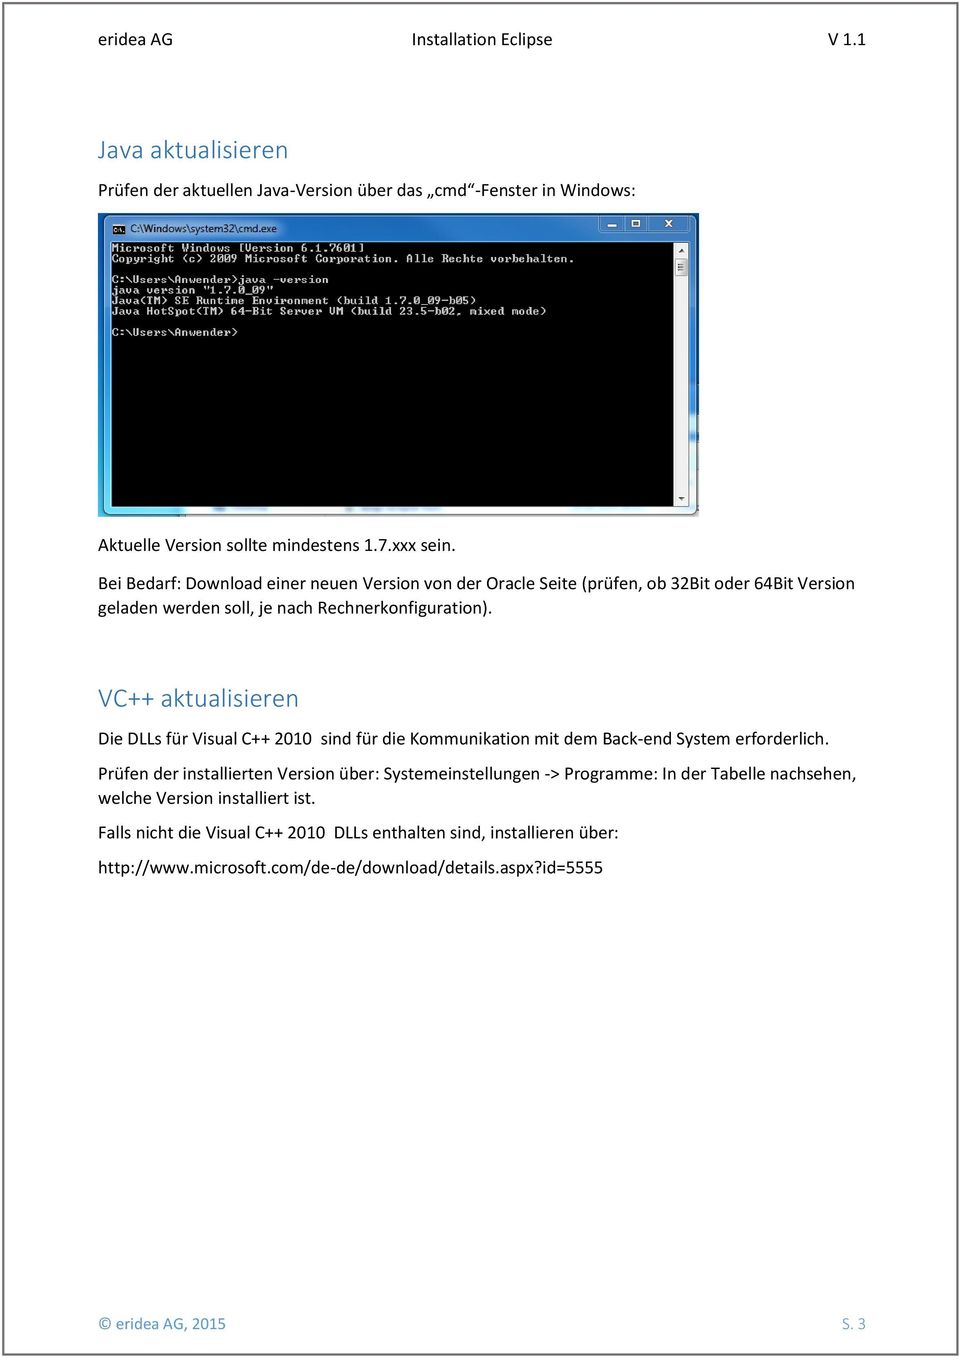 VC++ aktualisieren Die DLLs für Visual C++ 2010 sind für die Kommunikation mit dem Back-end System erforderlich.